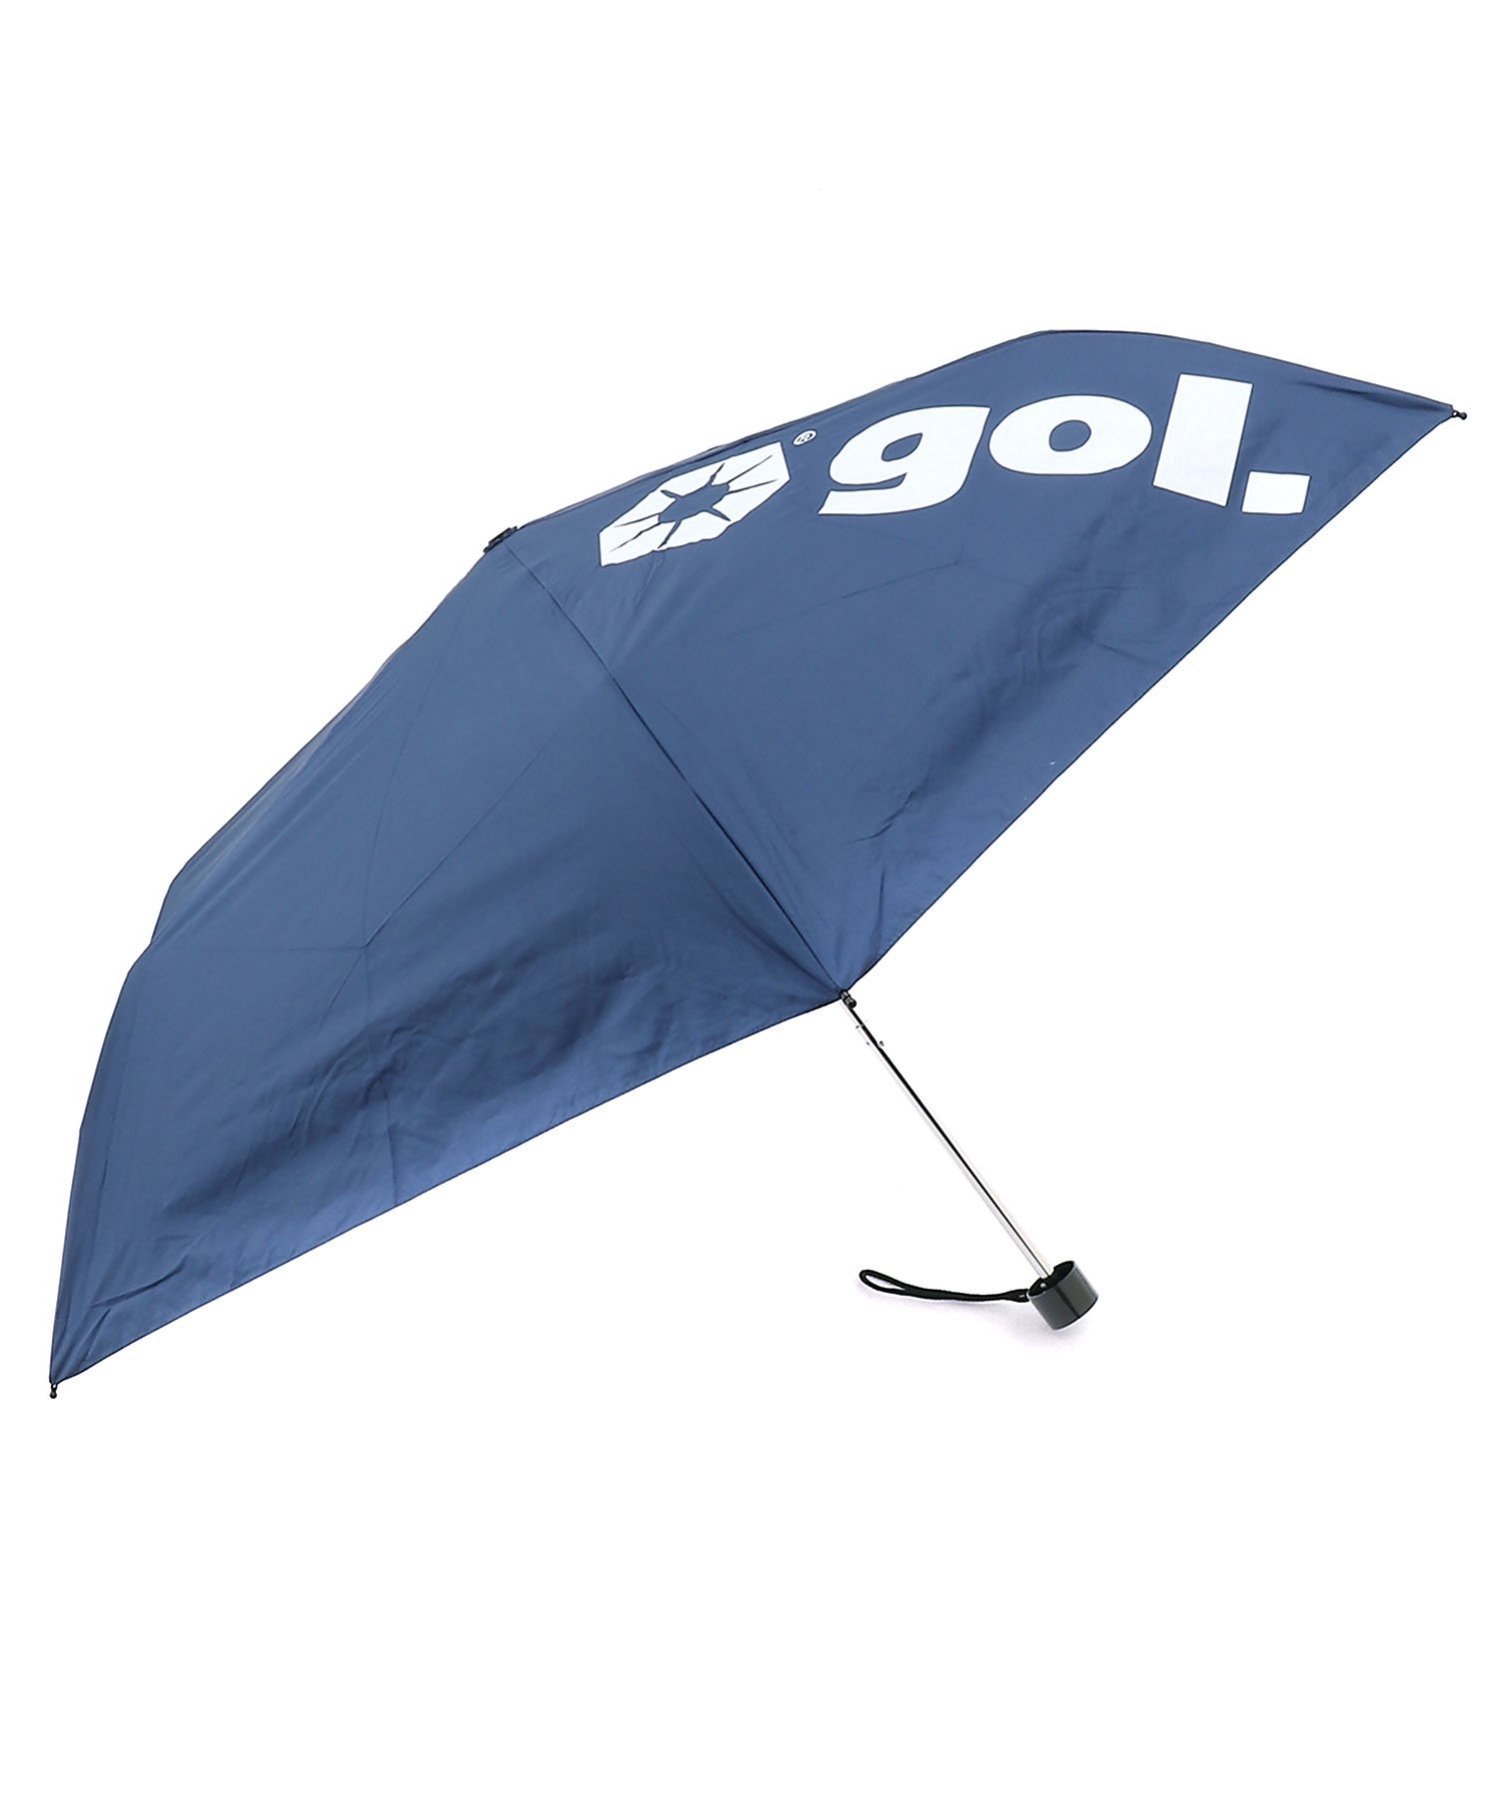 gol.（ゴル）(U)ゴル748折りたたみ傘 BLK F＊大人気の晴雨兼用遮光傘の折り畳み傘が登場。＊晴雨兼用だから毎日バッグに入れられるし200gを切る軽量なので持ち運び時にも気になりません。＊雨の日での使用はもちろん裏張りに遮光素材を使用し、日差しの強い日のスポーツ観戦でも使える晴雨兼用のフルタイムUVアンブレラ。＊ロゴ部分はプリント仕様。＊撥水+UV90%+遮光も付いた晴れても雨でも曇っていても“ツカエル”パーフェクトアンブレラ。型番：G386-748-NVY-F HR9949【採寸】サイズ長さ(最短)長さ(最長)親骨F24.5cm57.5cm55.0cm商品のサイズについて【商品詳細】中国素材：ポリエステル100%サイズ：F※画面上と実物では多少色具合が異なって見える場合もございます。ご了承ください。商品のカラーについて 【予約商品について】 ※「先行予約販売中」「予約販売中」をご注文の際は予約商品についてをご確認ください。gol.（ゴル）(U)ゴル748折りたたみ傘 BLK F＊大人気の晴雨兼用遮光傘の折り畳み傘が登場。＊晴雨兼用だから毎日バッグに入れられるし200gを切る軽量なので持ち運び時にも気になりません。＊雨の日での使用はもちろん裏張りに遮光素材を使用し、日差しの強い日のスポーツ観戦でも使える晴雨兼用のフルタイムUVアンブレラ。＊ロゴ部分はプリント仕様。＊撥水+UV90%+遮光も付いた晴れても雨でも曇っていても“ツカエル”パーフェクトアンブレラ。型番：G386-748-NVY-F HR9949【採寸】サイズ長さ(最短)長さ(最長)親骨F24.5cm57.5cm55.0cm商品のサイズについて【商品詳細】中国素材：ポリエステル100%サイズ：F※画面上と実物では多少色具合が異なって見える場合もございます。ご了承ください。商品のカラーについて 【予約商品について】 ※「先行予約販売中」「予約販売中」をご注文の際は予約商品についてをご確認ください。■重要なお知らせ※ 当店では、ギフト配送サービス及びラッピングサービスを行っておりません。ご注文者様とお届け先が違う場合でも、タグ（値札）付「納品書 兼 返品連絡票」同梱の状態でお送り致しますのでご了承ください。 ラッピング・ギフト配送について※ 2点以上ご購入の場合、全ての商品が揃い次第一括でのお届けとなります。お届け予定日の異なる商品をお買い上げの場合はご注意下さい。お急ぎの商品がございましたら分けてご購入いただきますようお願い致します。発送について ※ 買い物カートに入れるだけでは在庫確保されませんのでお早めに購入手続きをしてください。当店では在庫を複数サイトで共有しているため、同時にご注文があった場合、売切れとなってしまう事がございます。お手数ですが、ご注文後に当店からお送りする「ご注文内容の確認メール」をご確認ください。ご注文の確定について ※ Rakuten Fashionの商品ページに記載しているメーカー希望小売価格は、楽天市場「商品価格ナビ」に登録されている価格に準じています。 商品の価格についてgol.gol.の折りたたみ傘ファッション雑貨ご注文・お届けについて発送ガイドラッピンググッズ3,980円以上送料無料ご利用ガイド